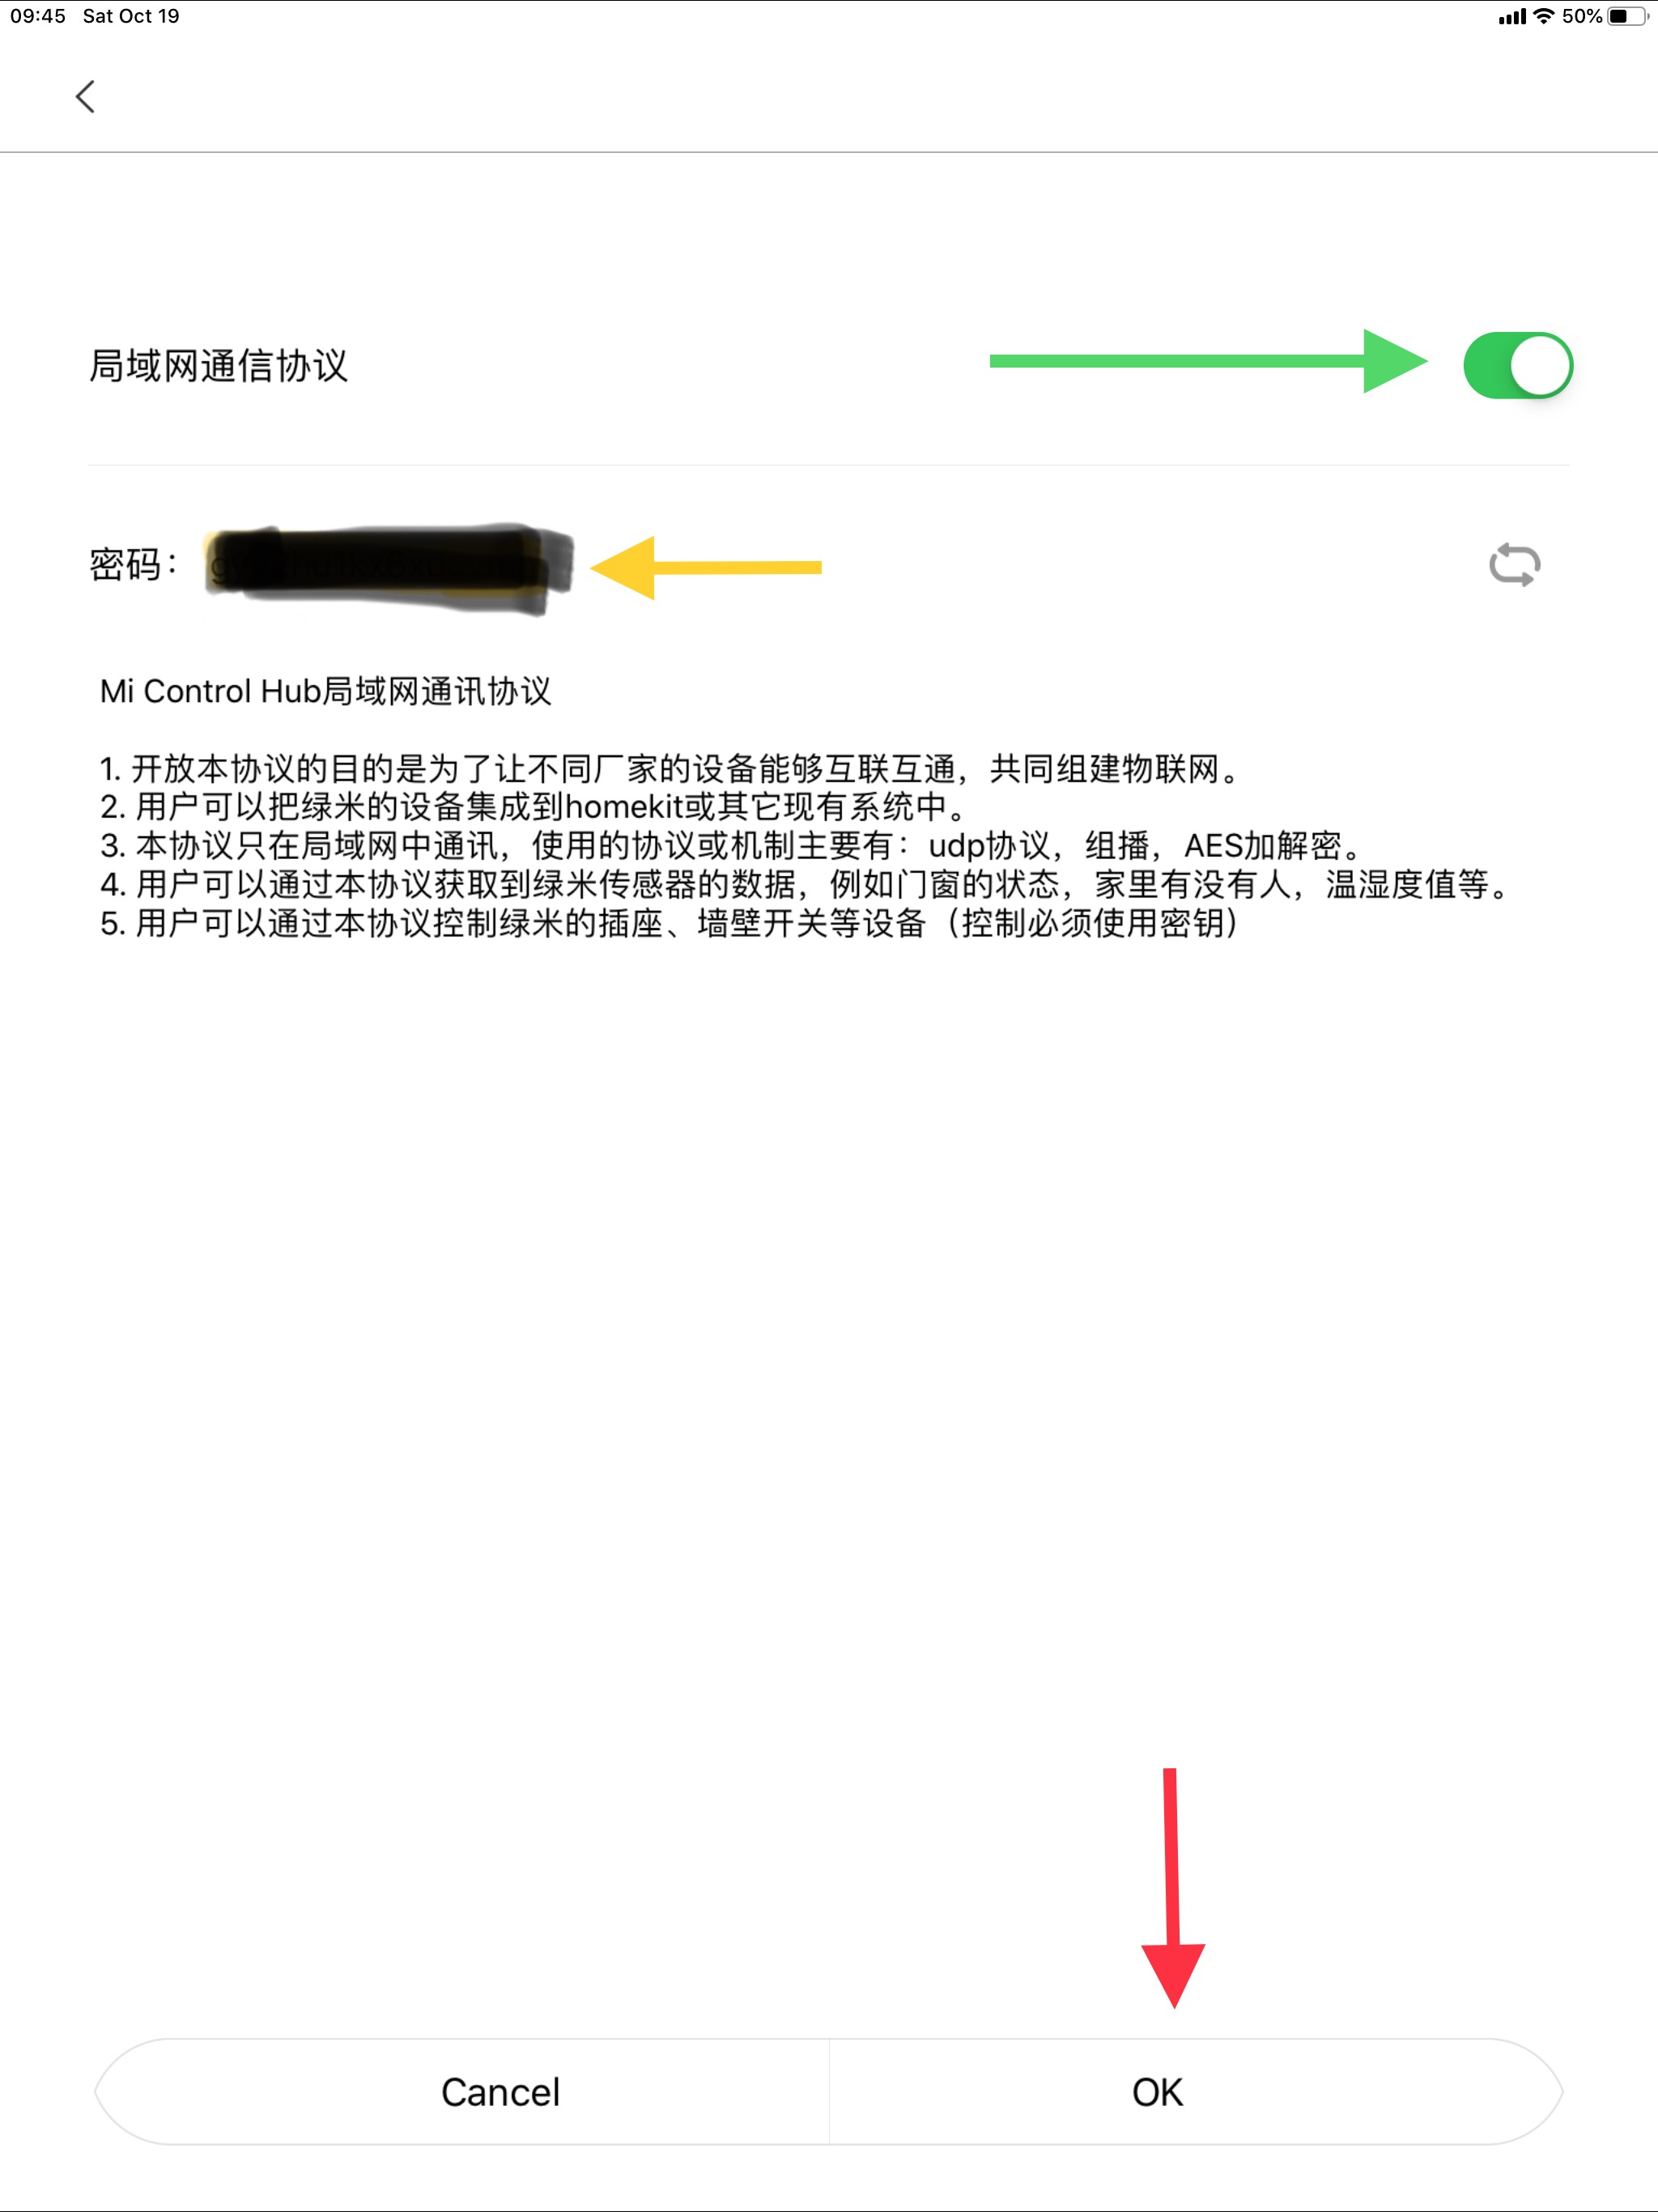 Hướng dẫn kết nối thiết bị Xiaomi vào Home Assistant - 5083091B 473C 47AC B0FE 3A57DF3DADAB - huong-dan - Kết nối Xiaomi Gateway vào Home Assistant, Kết nối thiết bị Xiaomi vào Hass